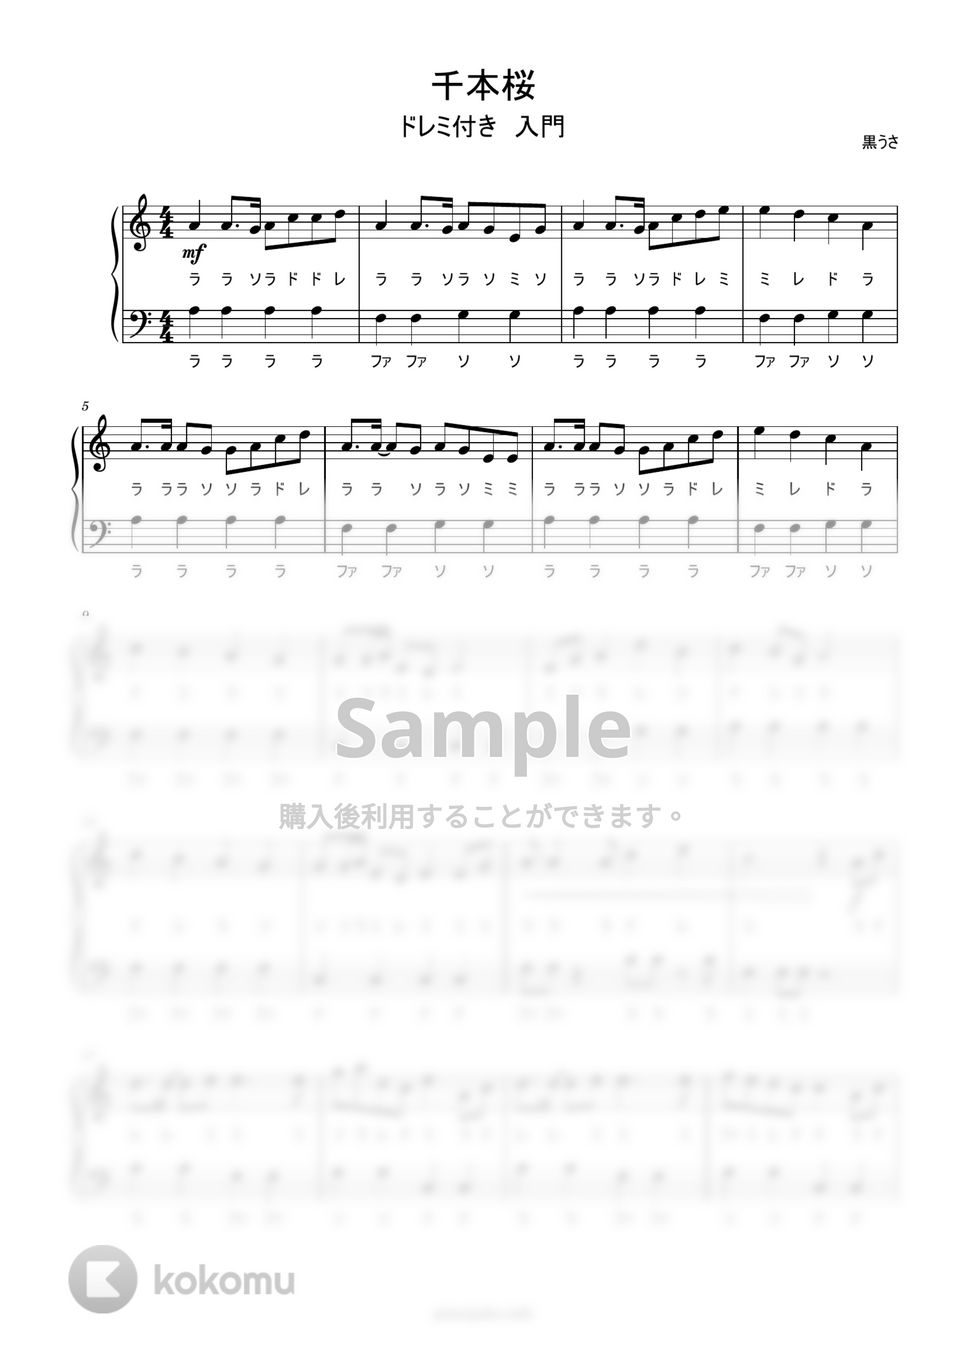 黒うさ - 千本桜 (ドレミ付き簡単楽譜) by ピアノ塾